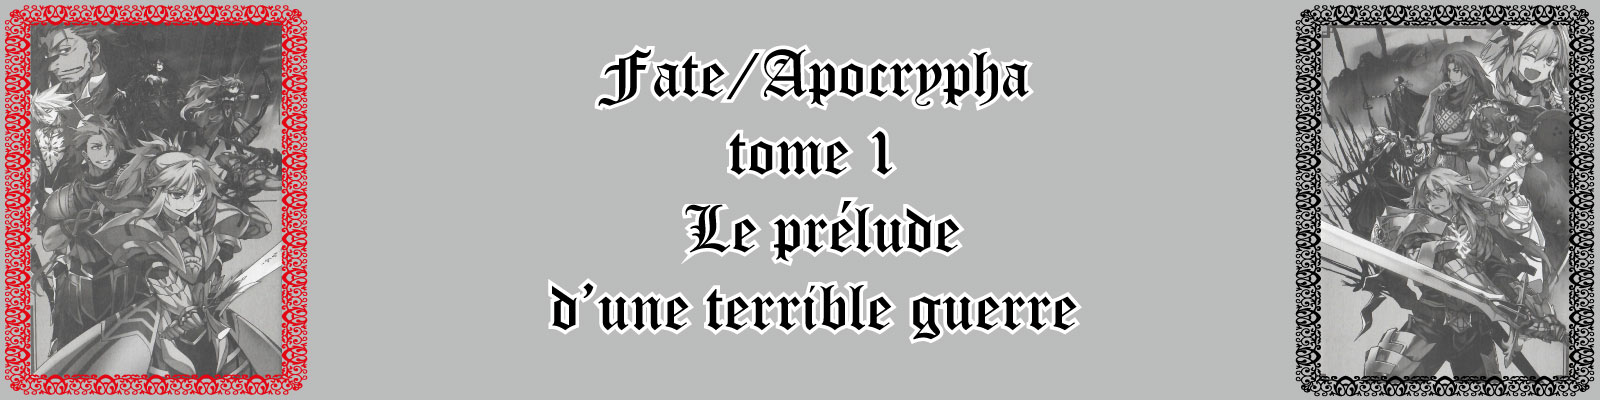 Fate-Apocrypha